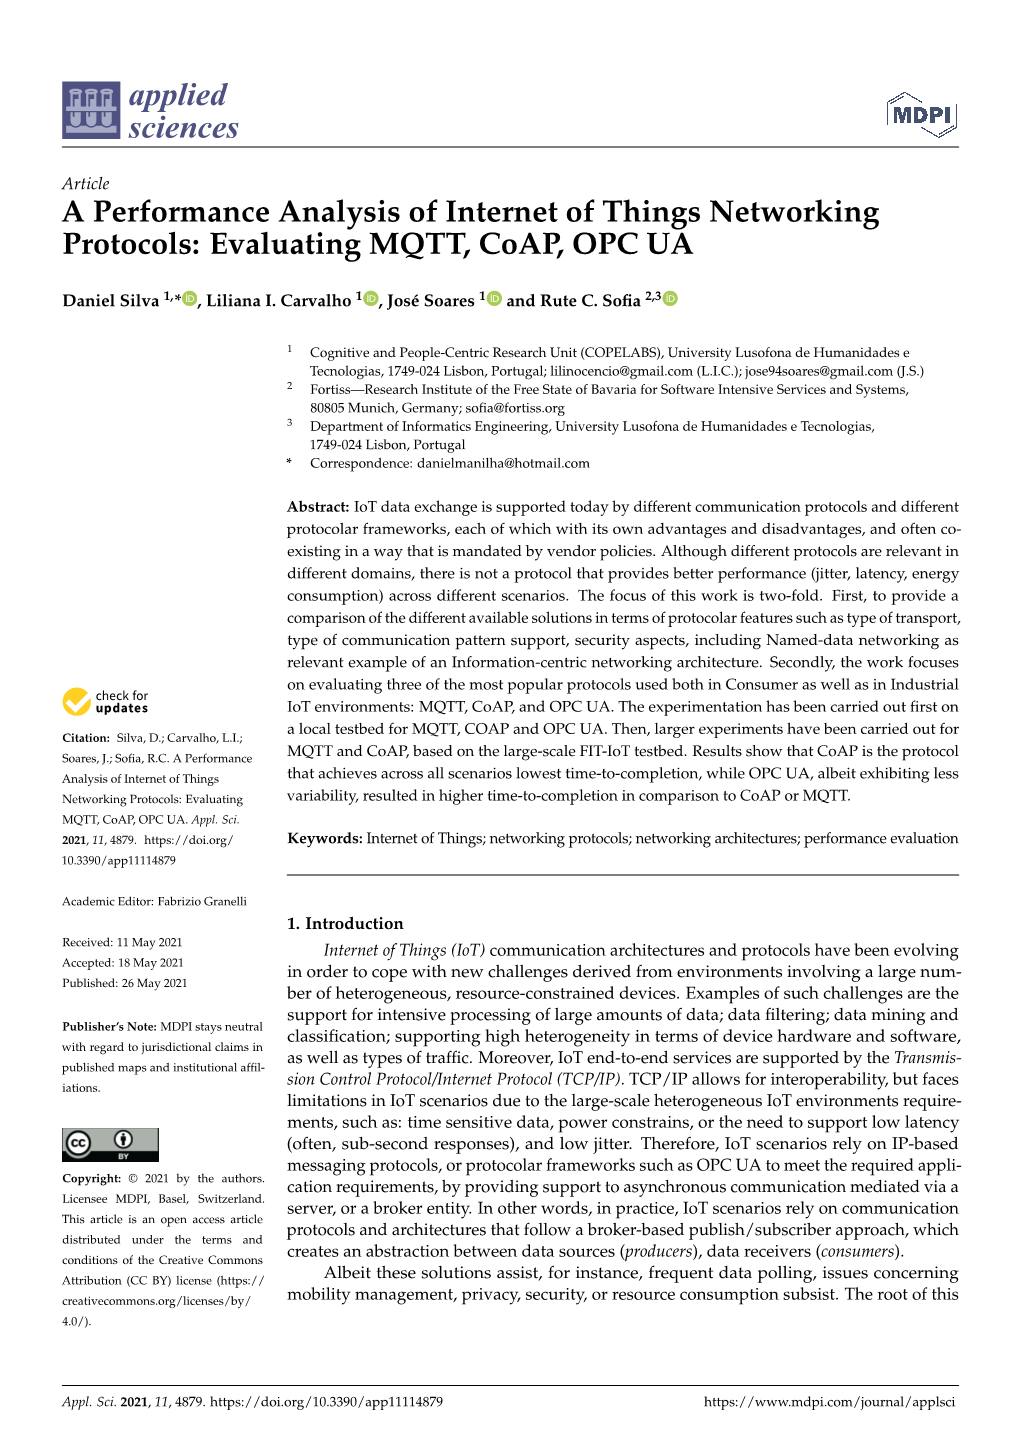 Evaluating MQTT, Coap, OPC UA